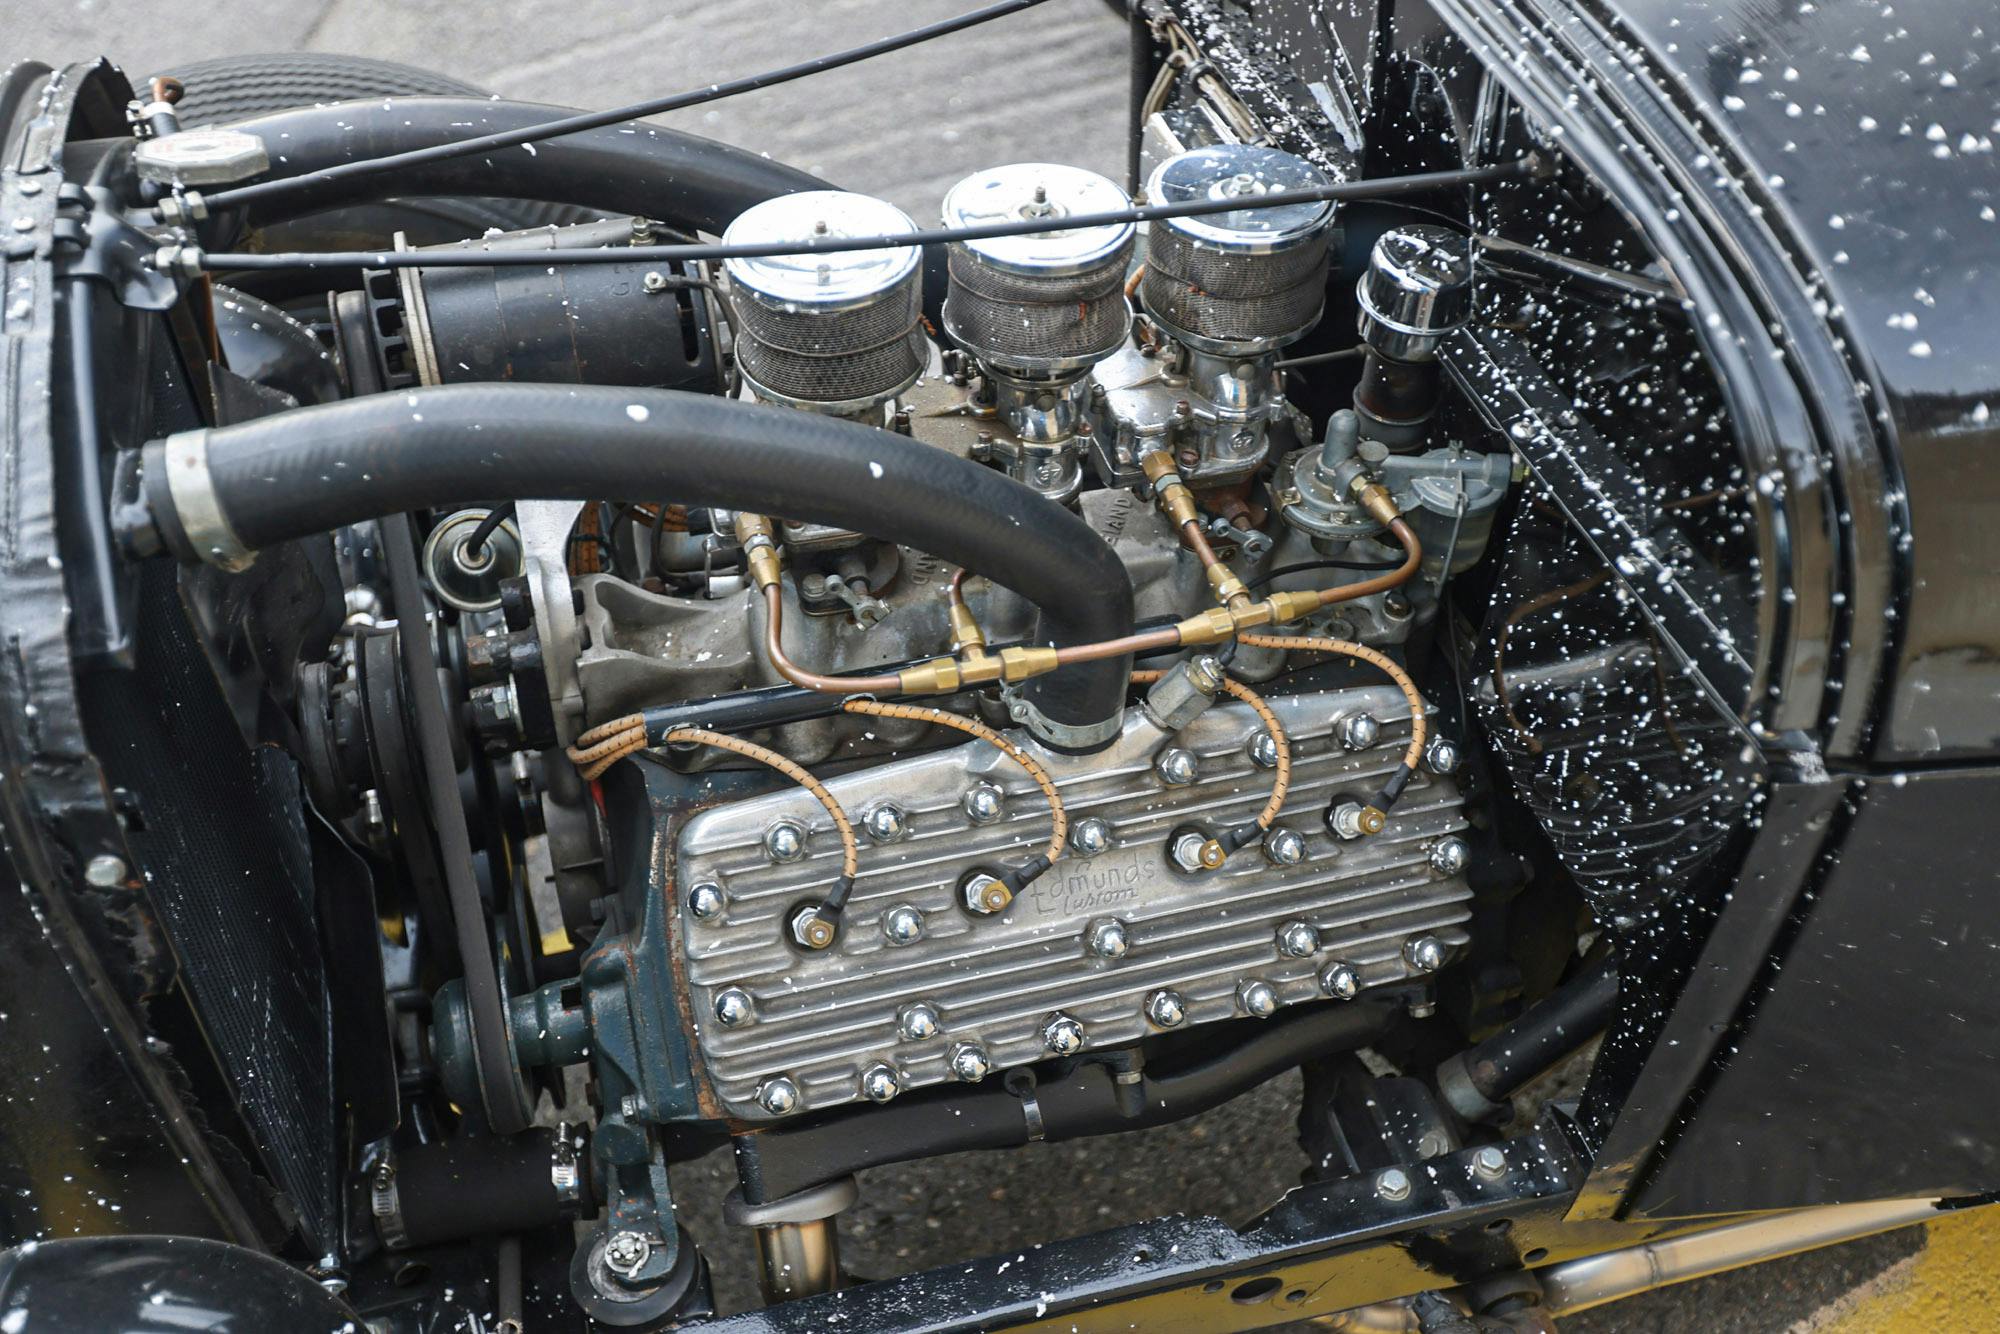 2022 Bonneville Car Show flathead engine